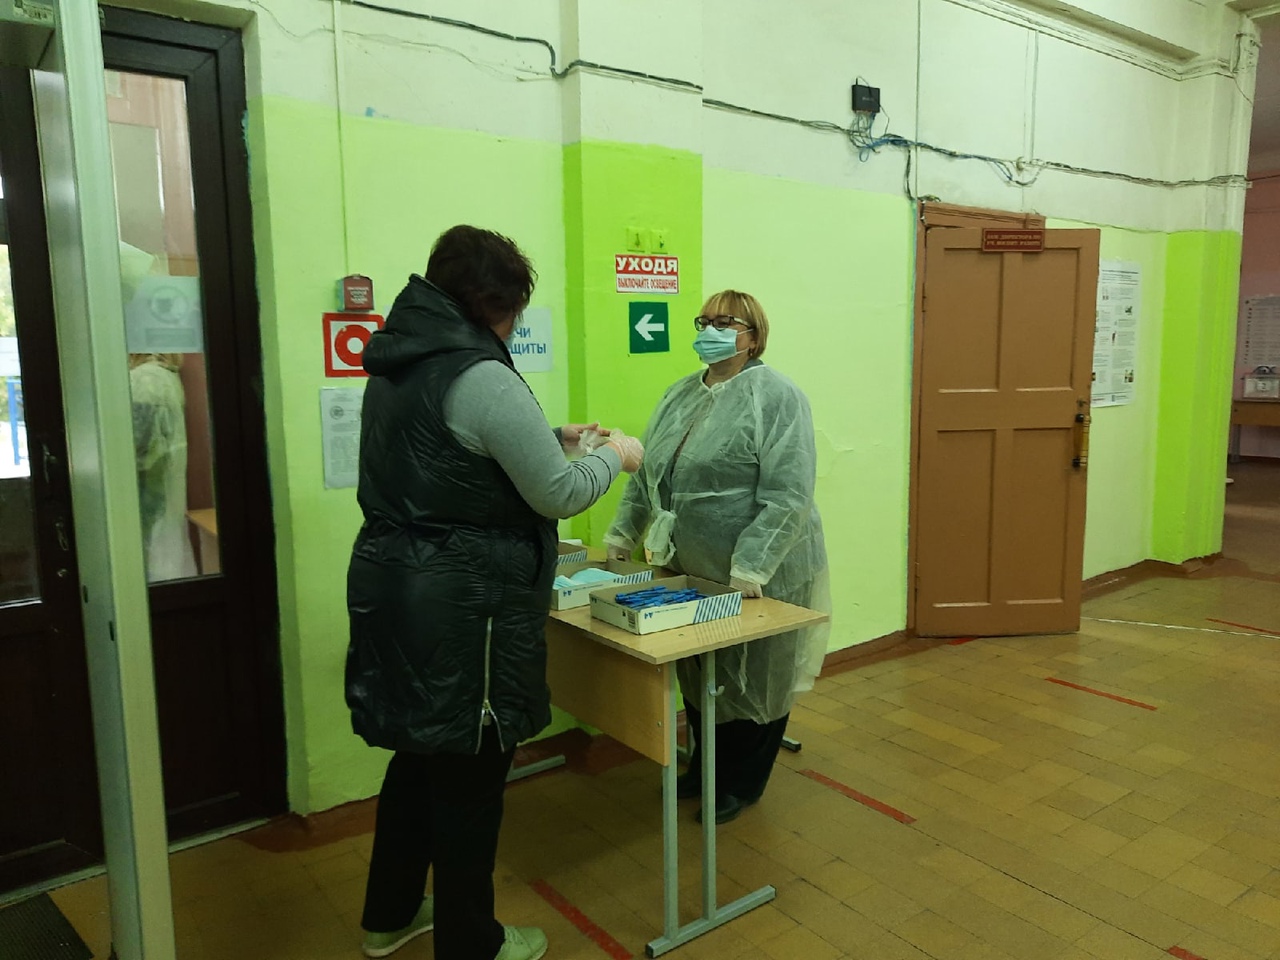 Во сколько открывается избирательный участок в москве. Открытие избирательных участков. Картинка фото открытие избирательного участка.